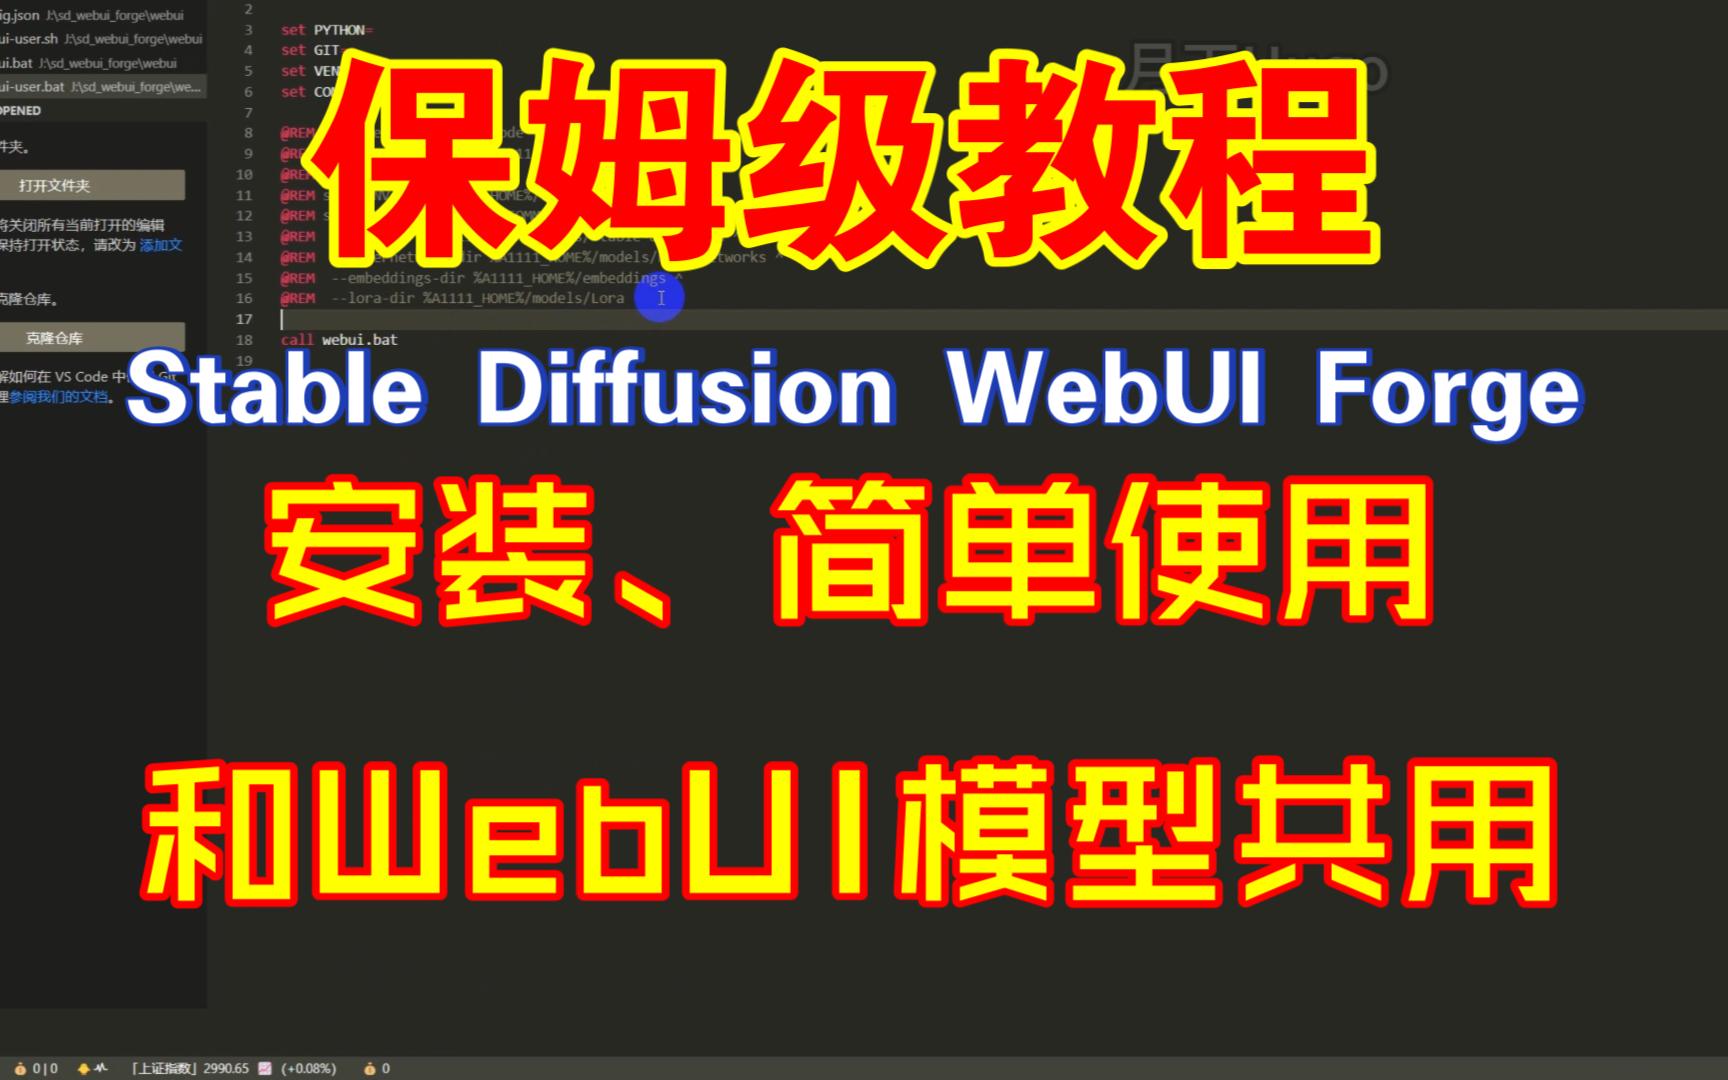 【保姆级教程】Stable Diffusion WebUI Forge的安装和简单使用、以及分享如何设置模型跟WebUI、comfyUI进行共用